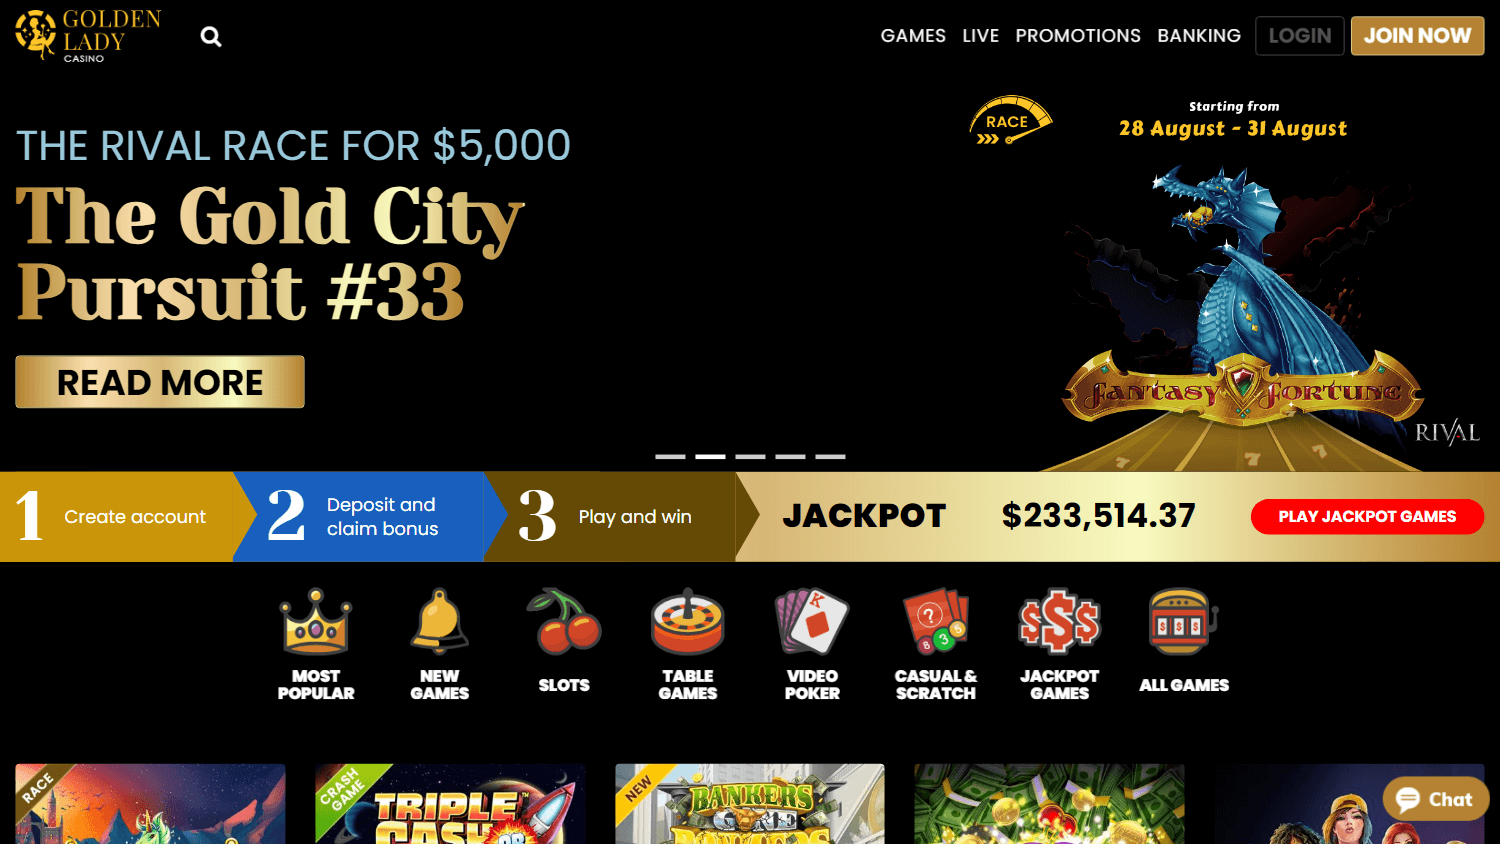 golden_lady_casino_homepage_desktop